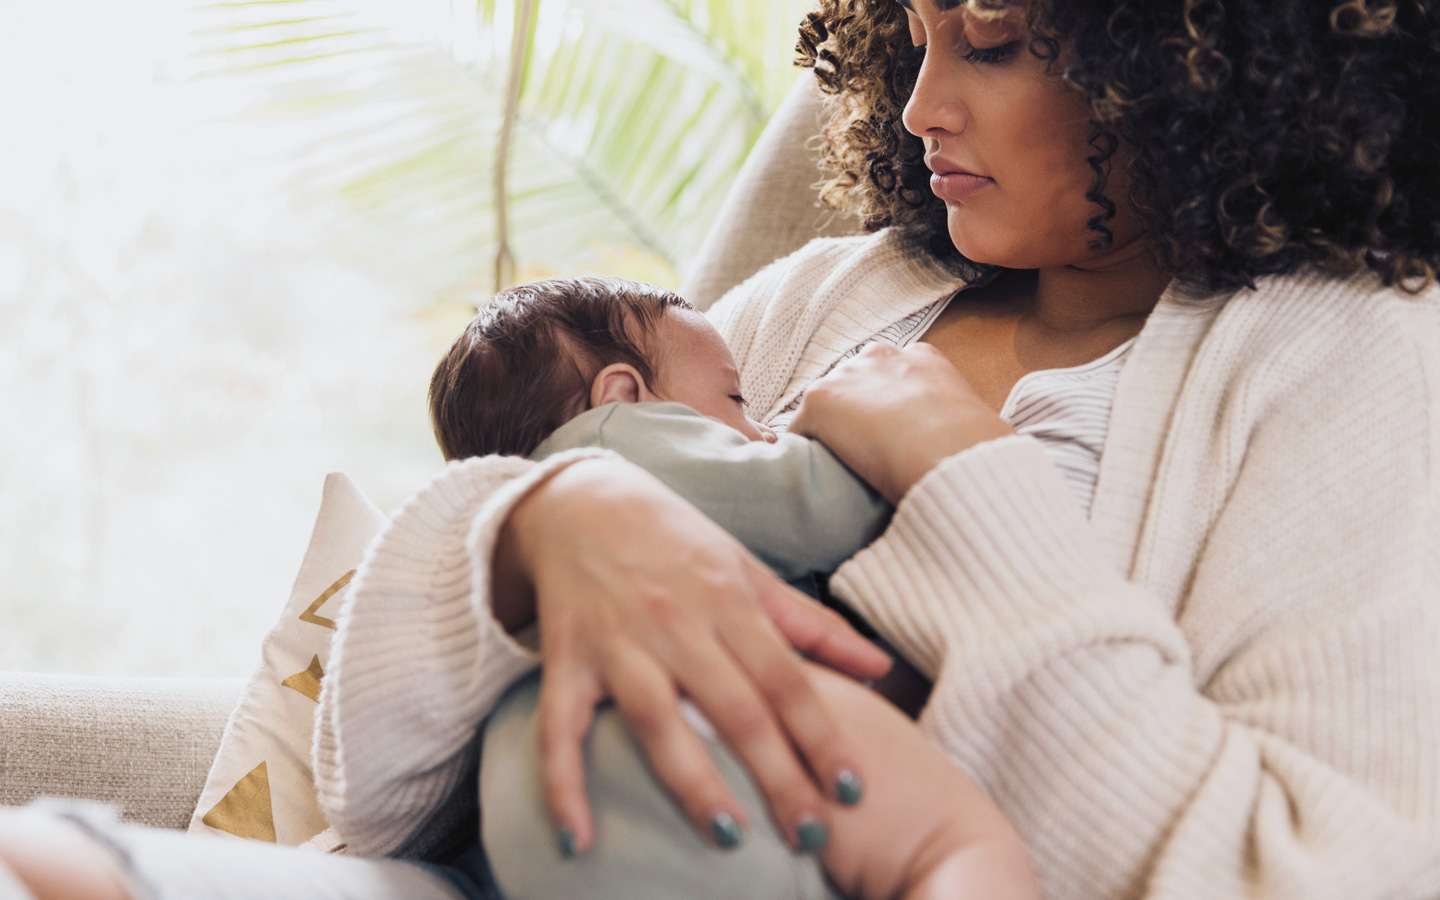 Foto: Eine Frau stillt ein Baby.